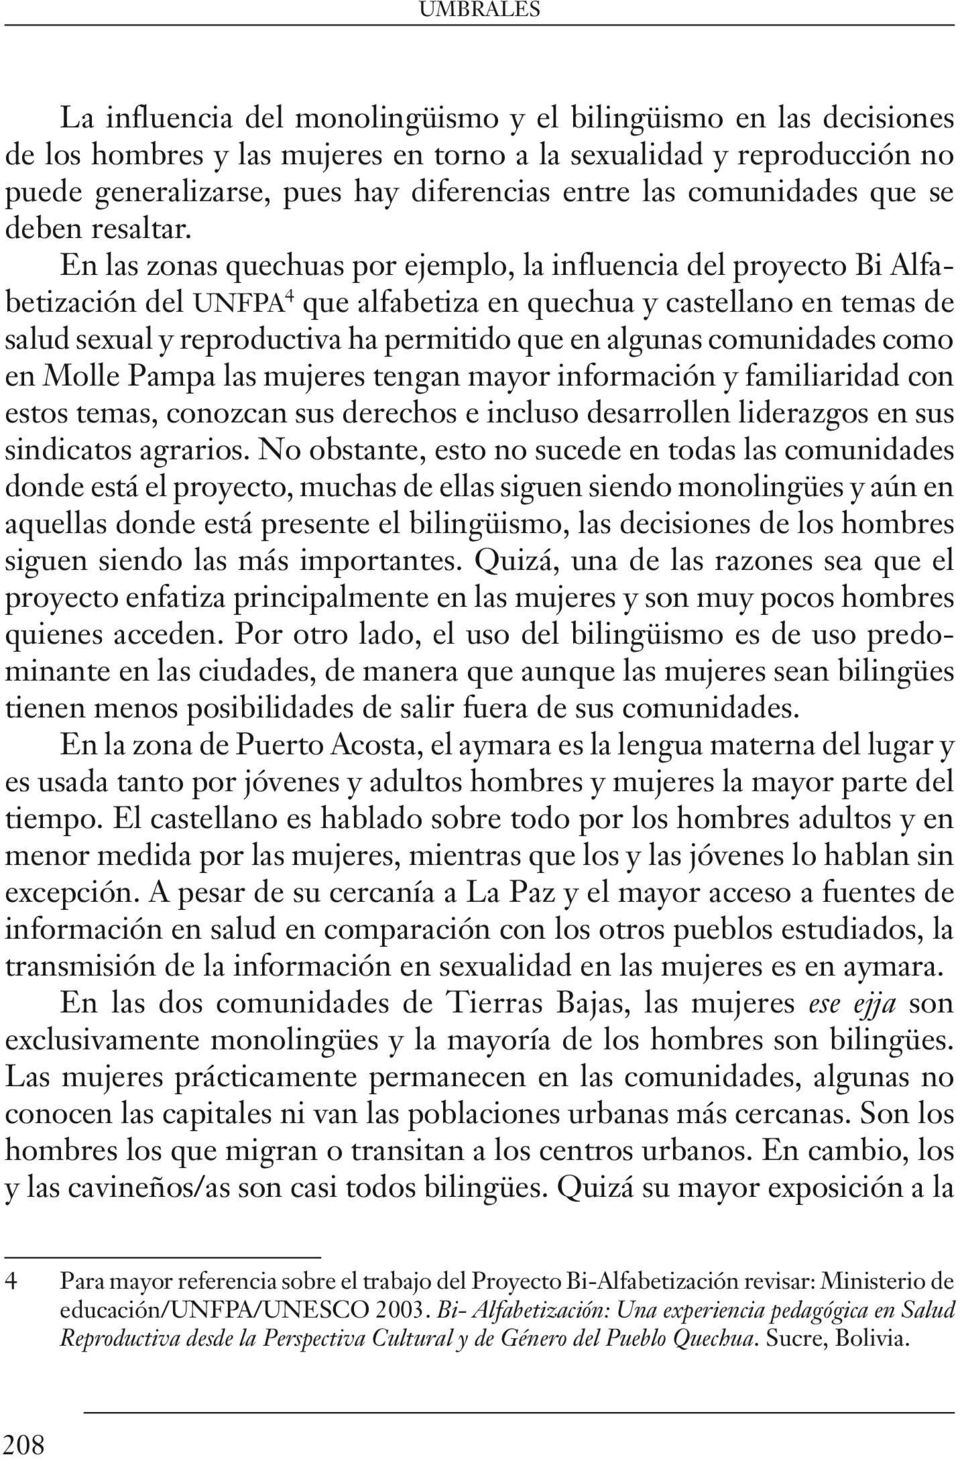 En las zonas quechuas por ejemplo, la influencia del proyecto Bi Alfabetización del unfpa 4 que alfabetiza en quechua y castellano en temas de salud sexual y reproductiva ha permitido que en algunas